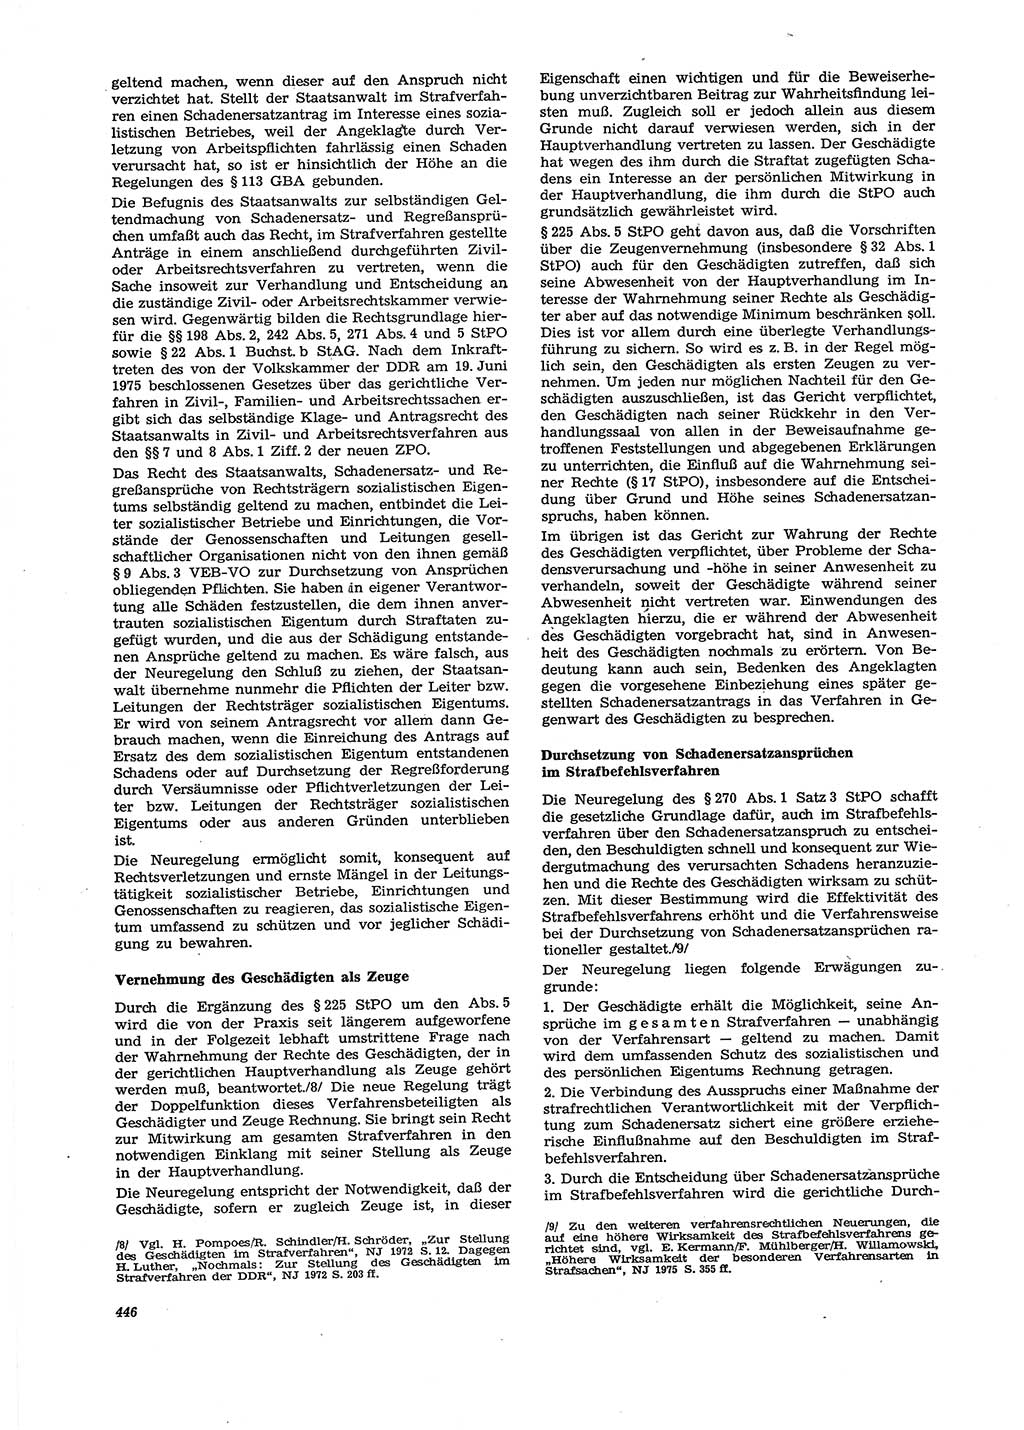 Neue Justiz (NJ), Zeitschrift für Recht und Rechtswissenschaft [Deutsche Demokratische Republik (DDR)], 29. Jahrgang 1975, Seite 446 (NJ DDR 1975, S. 446)